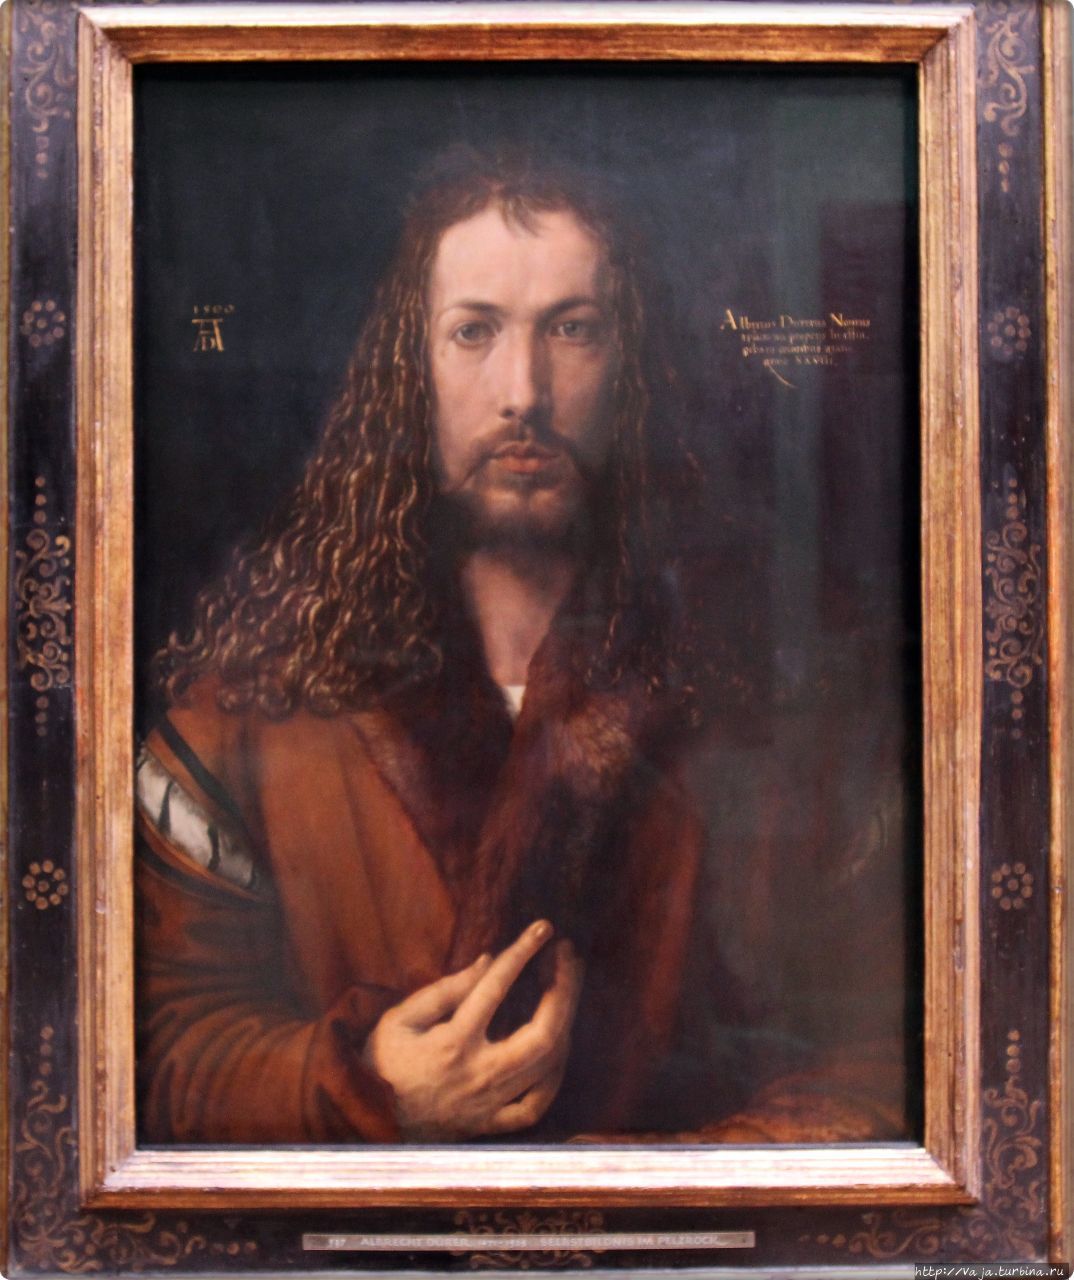 Альбрехт Дюрер. Автопортрет написанный в начале 1500 года,последний из трёх больших живописных автопортретов Дюрера и самый известный из них,считается самым личным  сложным и знаковым из всех автопортретов живописца. Мюнхен, Германия